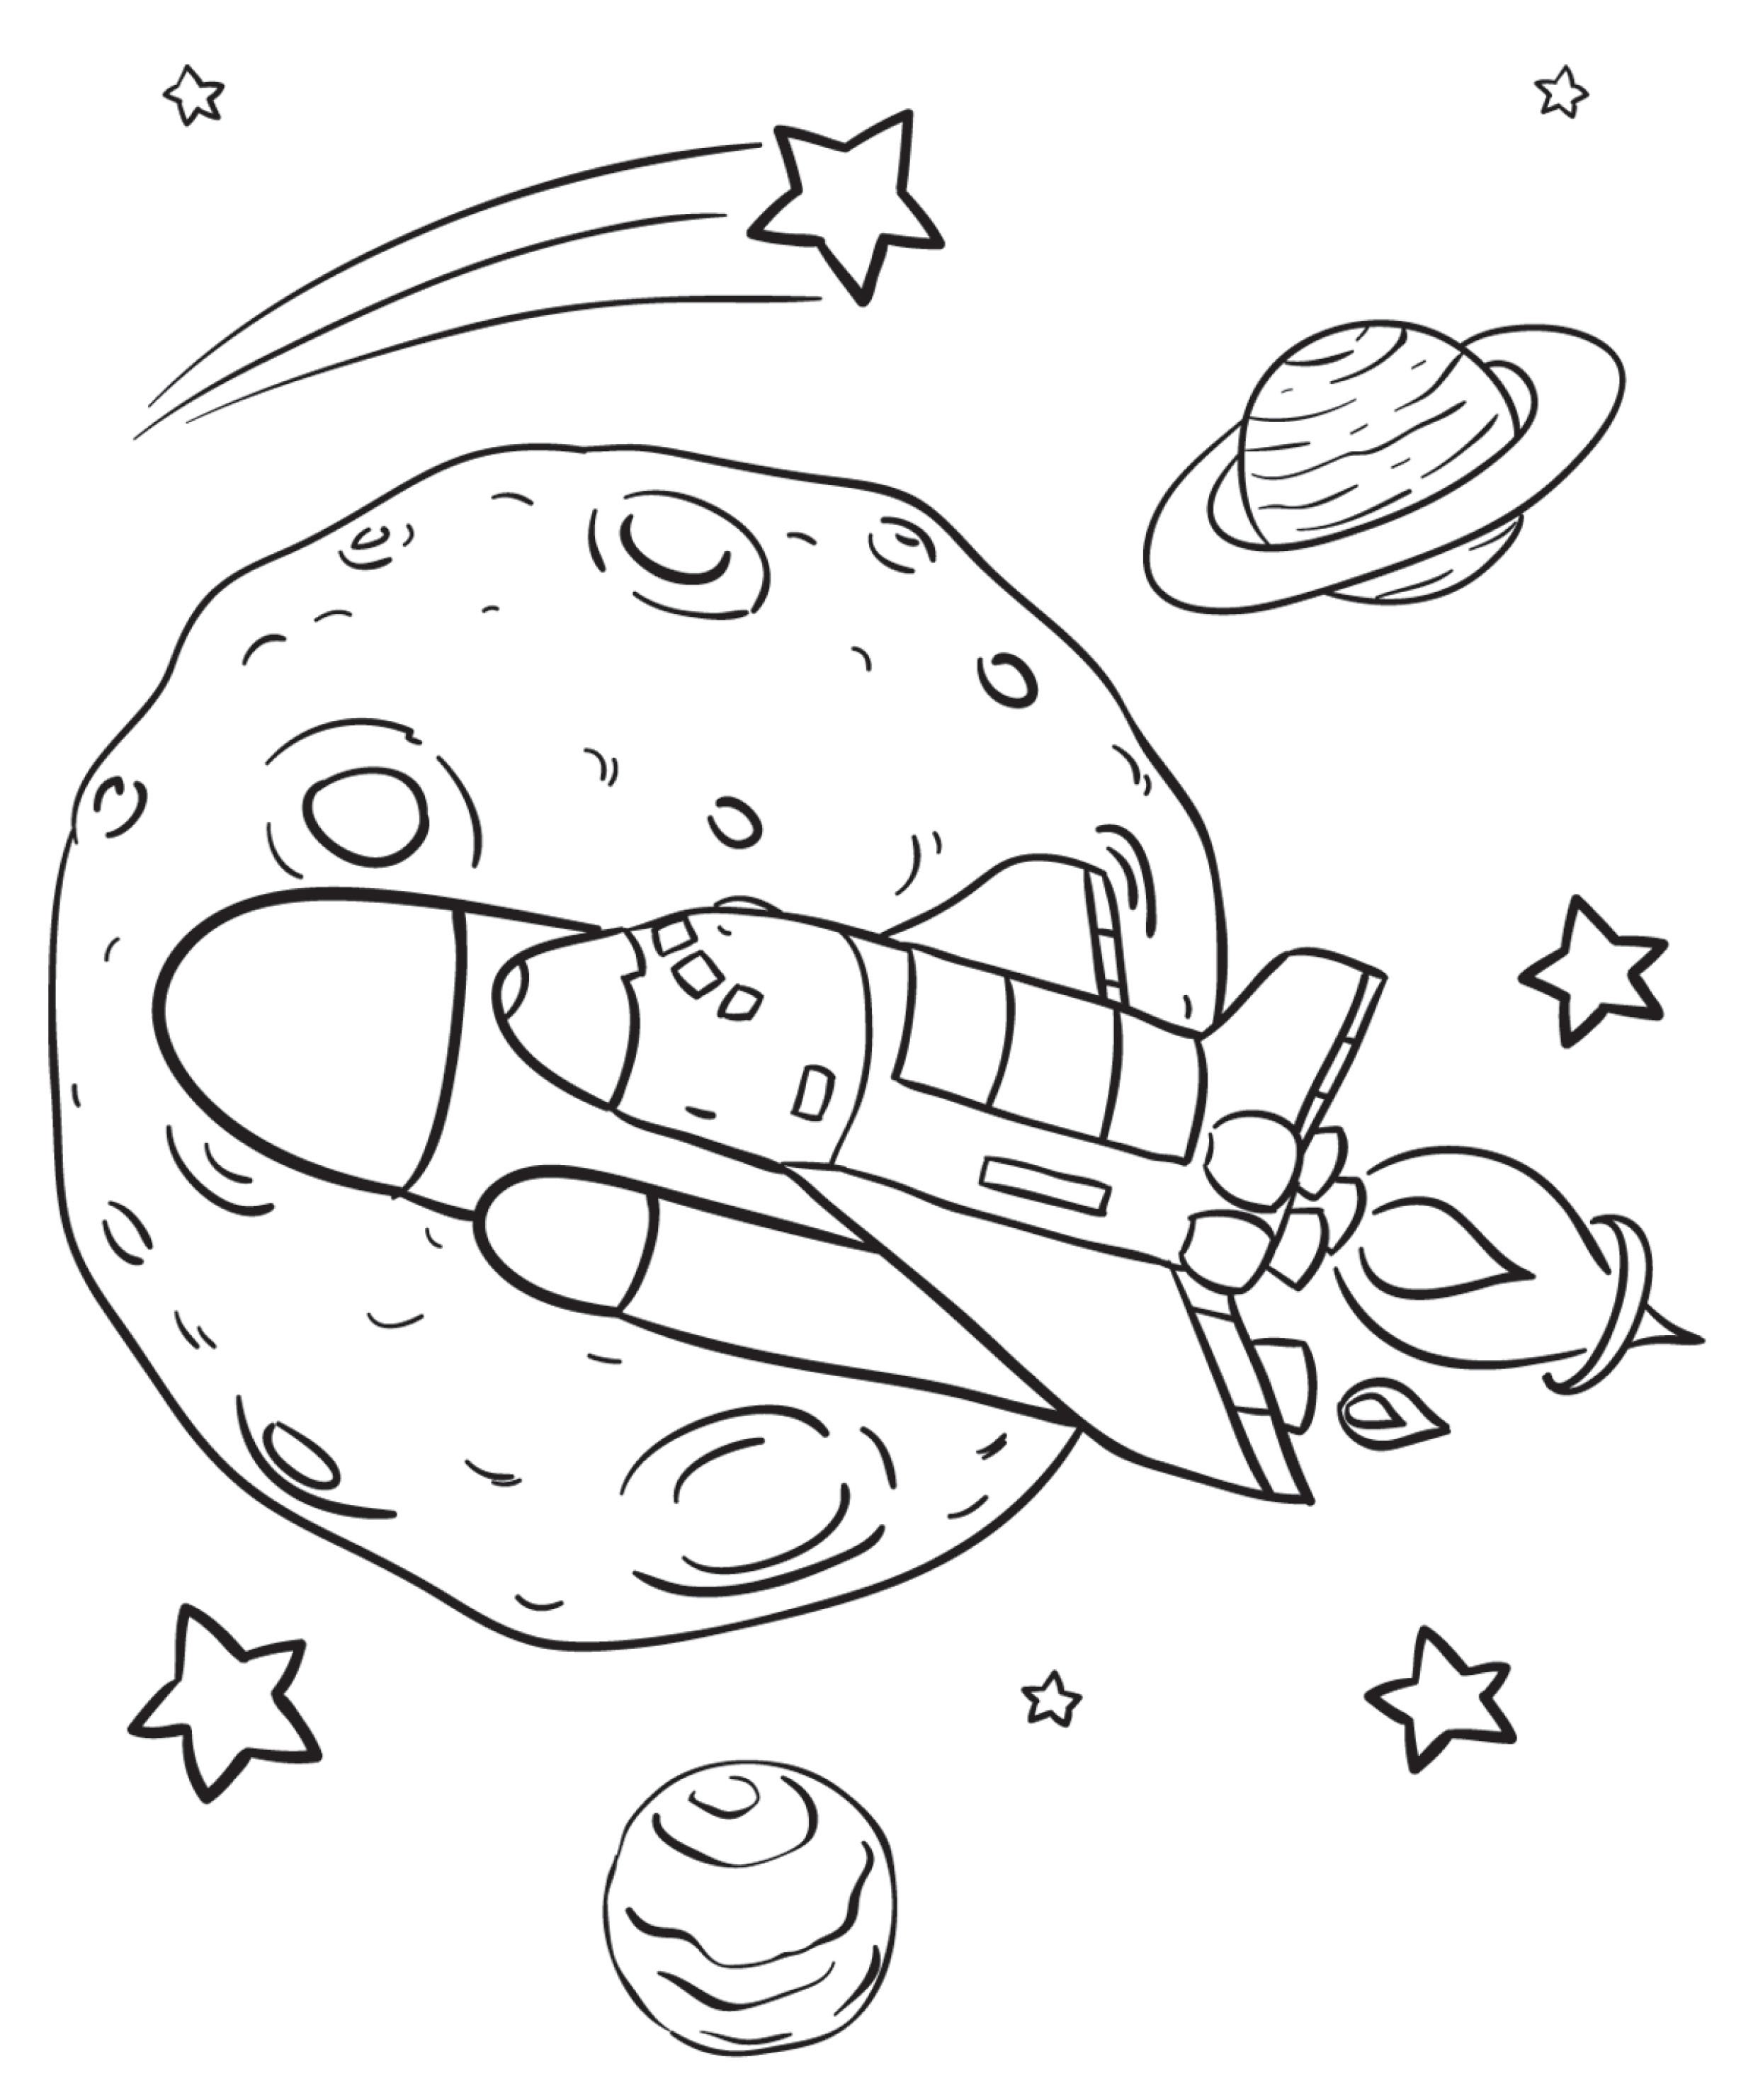 Раскраски 12 апреля день космонавтики для детей. Космос раскраска для детей. Раскраска. В космосе. Раскраски космосля детей. Раскраски космос для дошкольников.